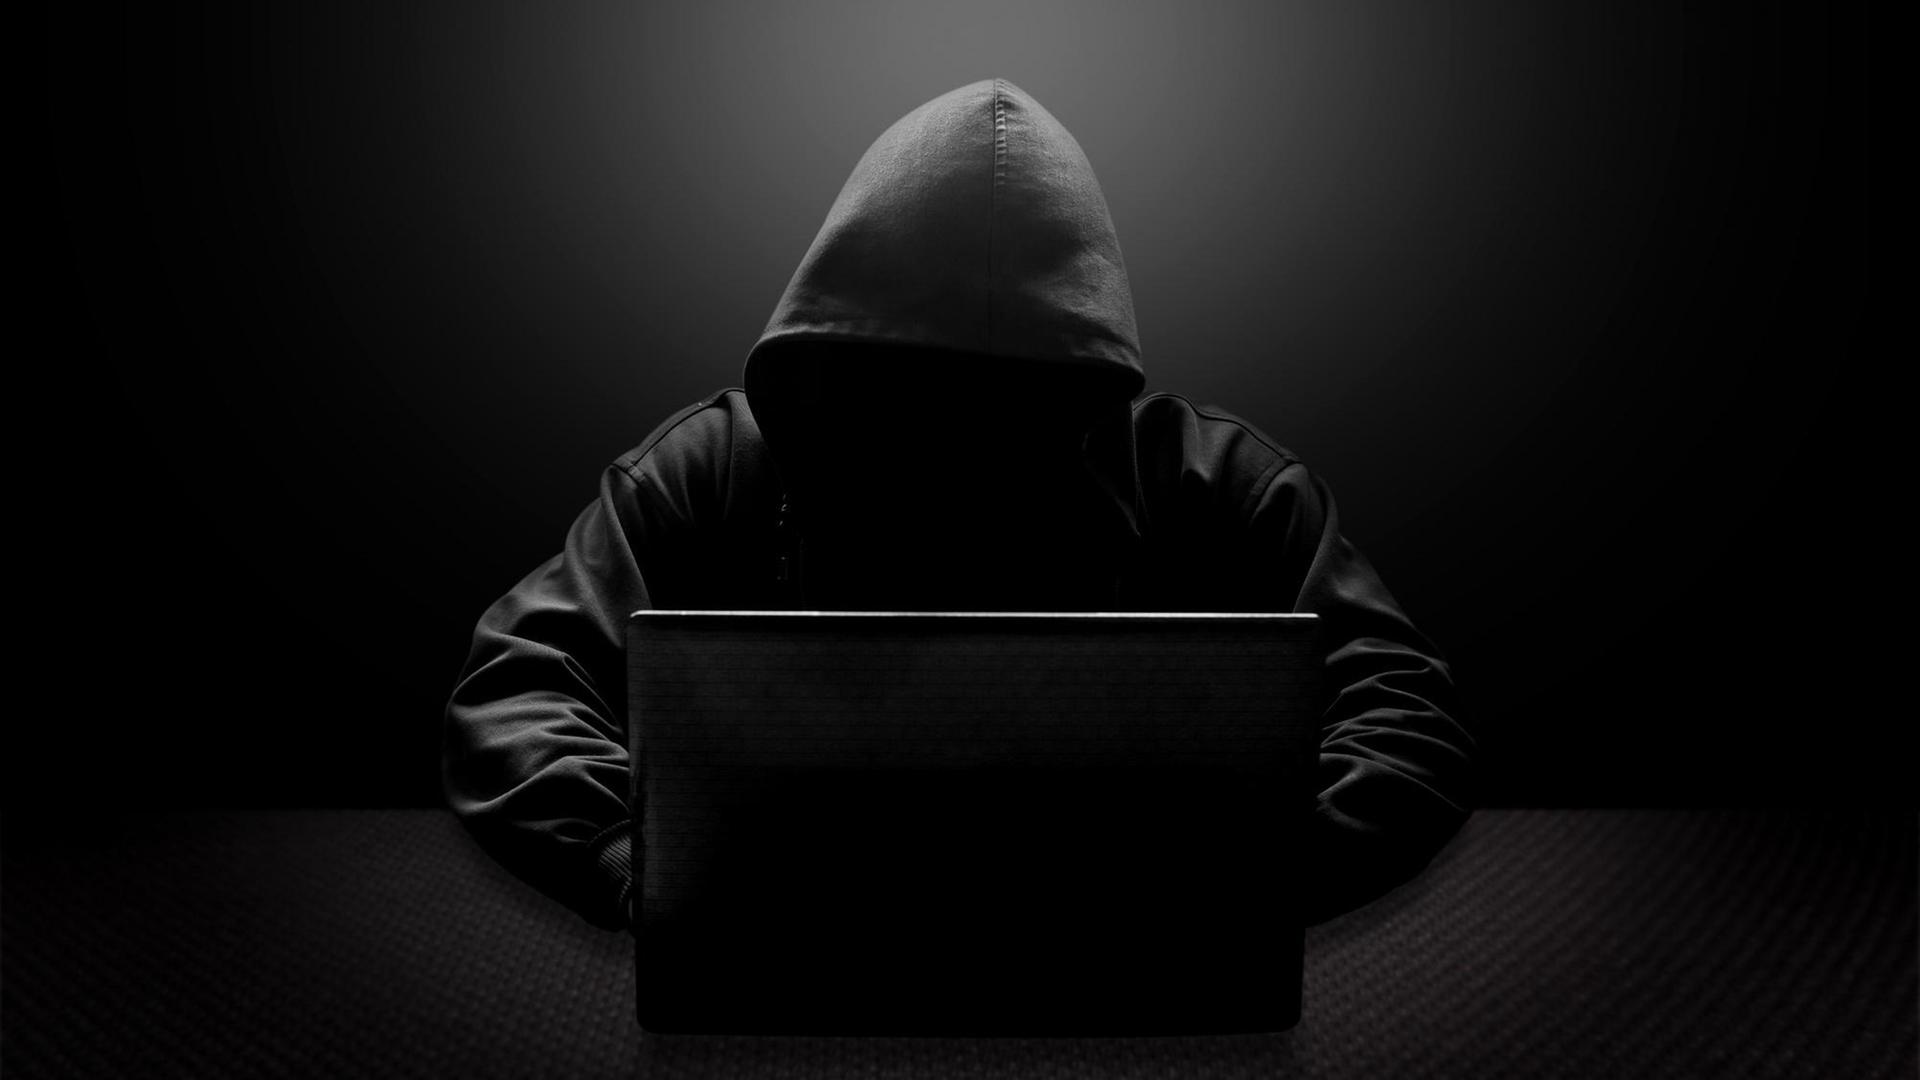 Ein Mann mit schwarzer Kapuze und verschattetem Gesicht sitzt vor einem Laptop.